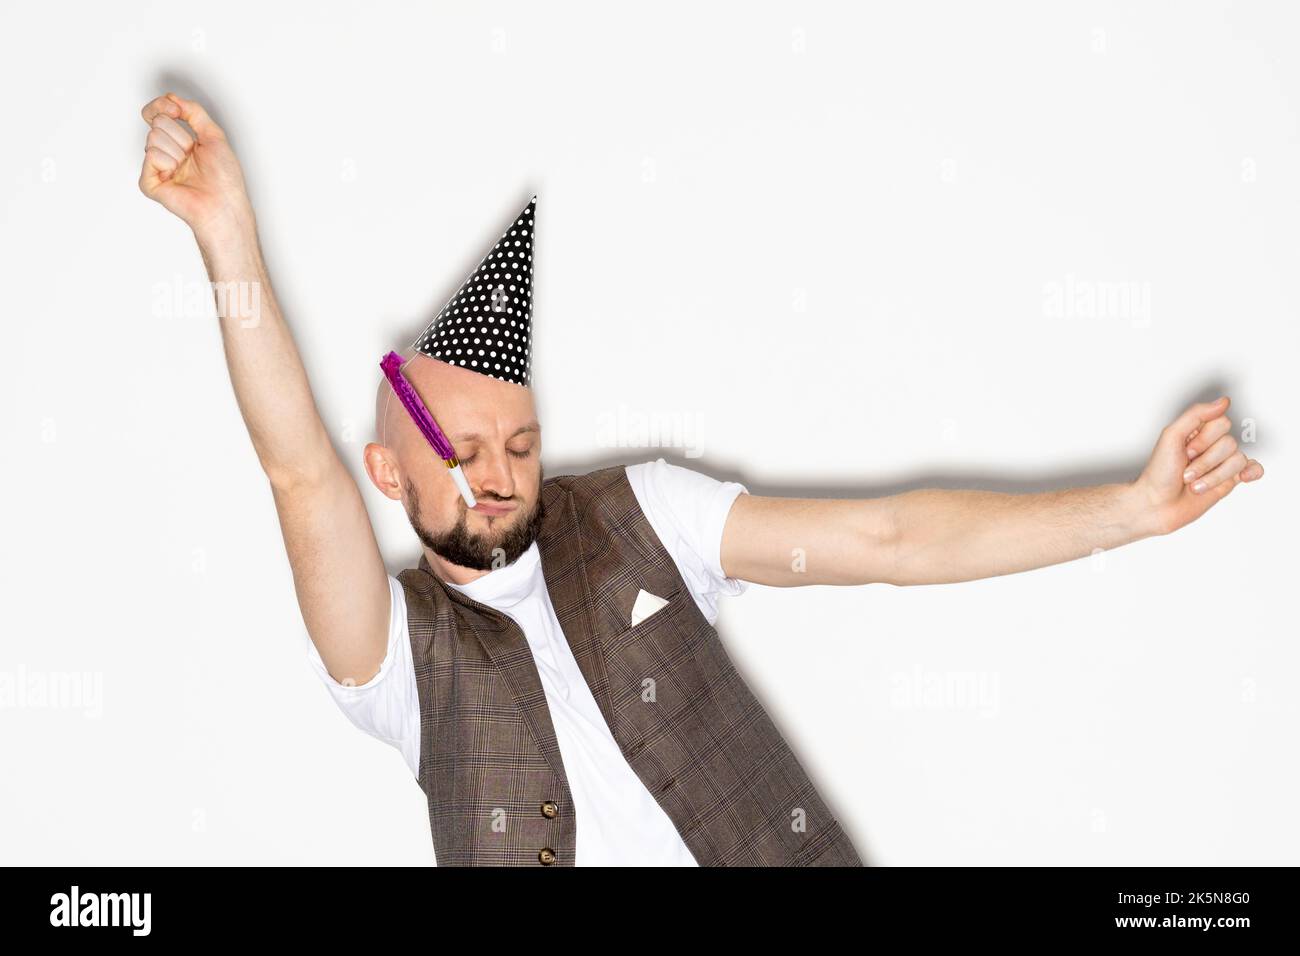 Geburtstagsfeier töricht Mann Urlaub Stimmung lustig Stockfoto